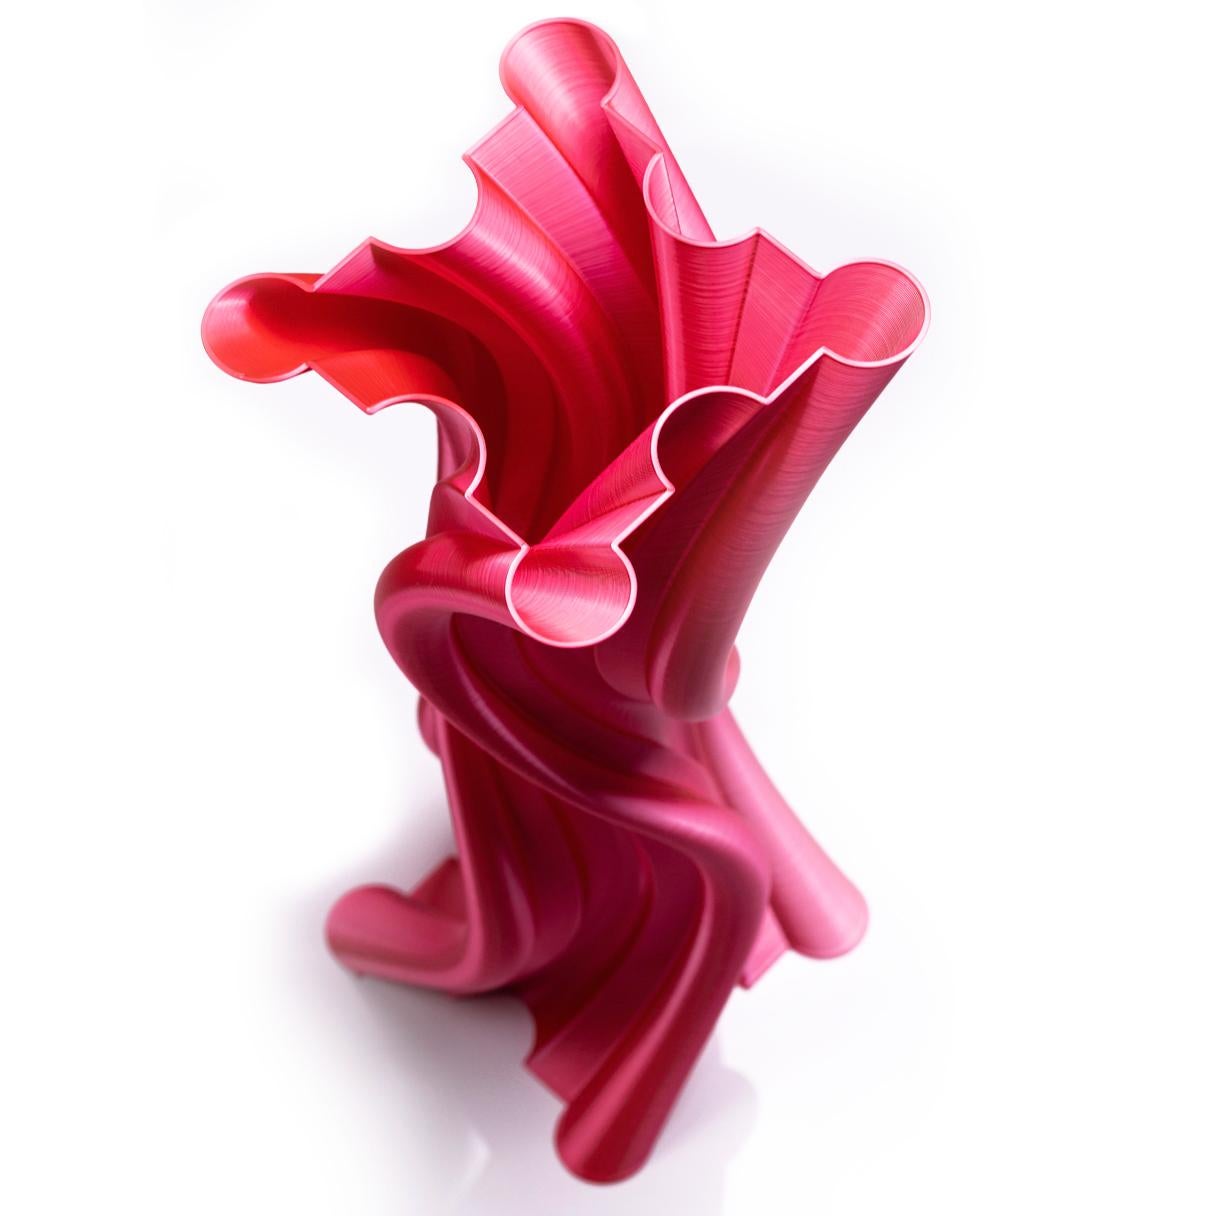 Vase-sculpture par DygoDesign

Faisant partie de la collection de sculptures Dygo Selection, cet élément dynamique est inspiré, selon la mythologie classique, par la muse de la danse.

Le design exclusif et les lignes douces et légères